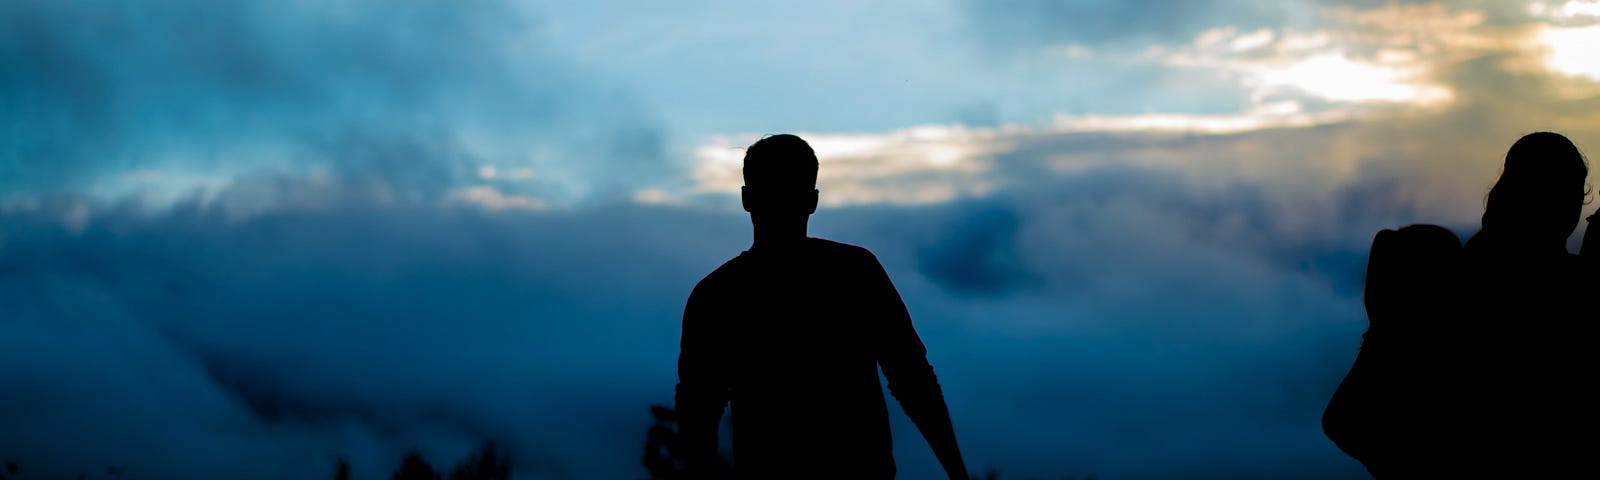 dark silhouette of guy against blue black sky